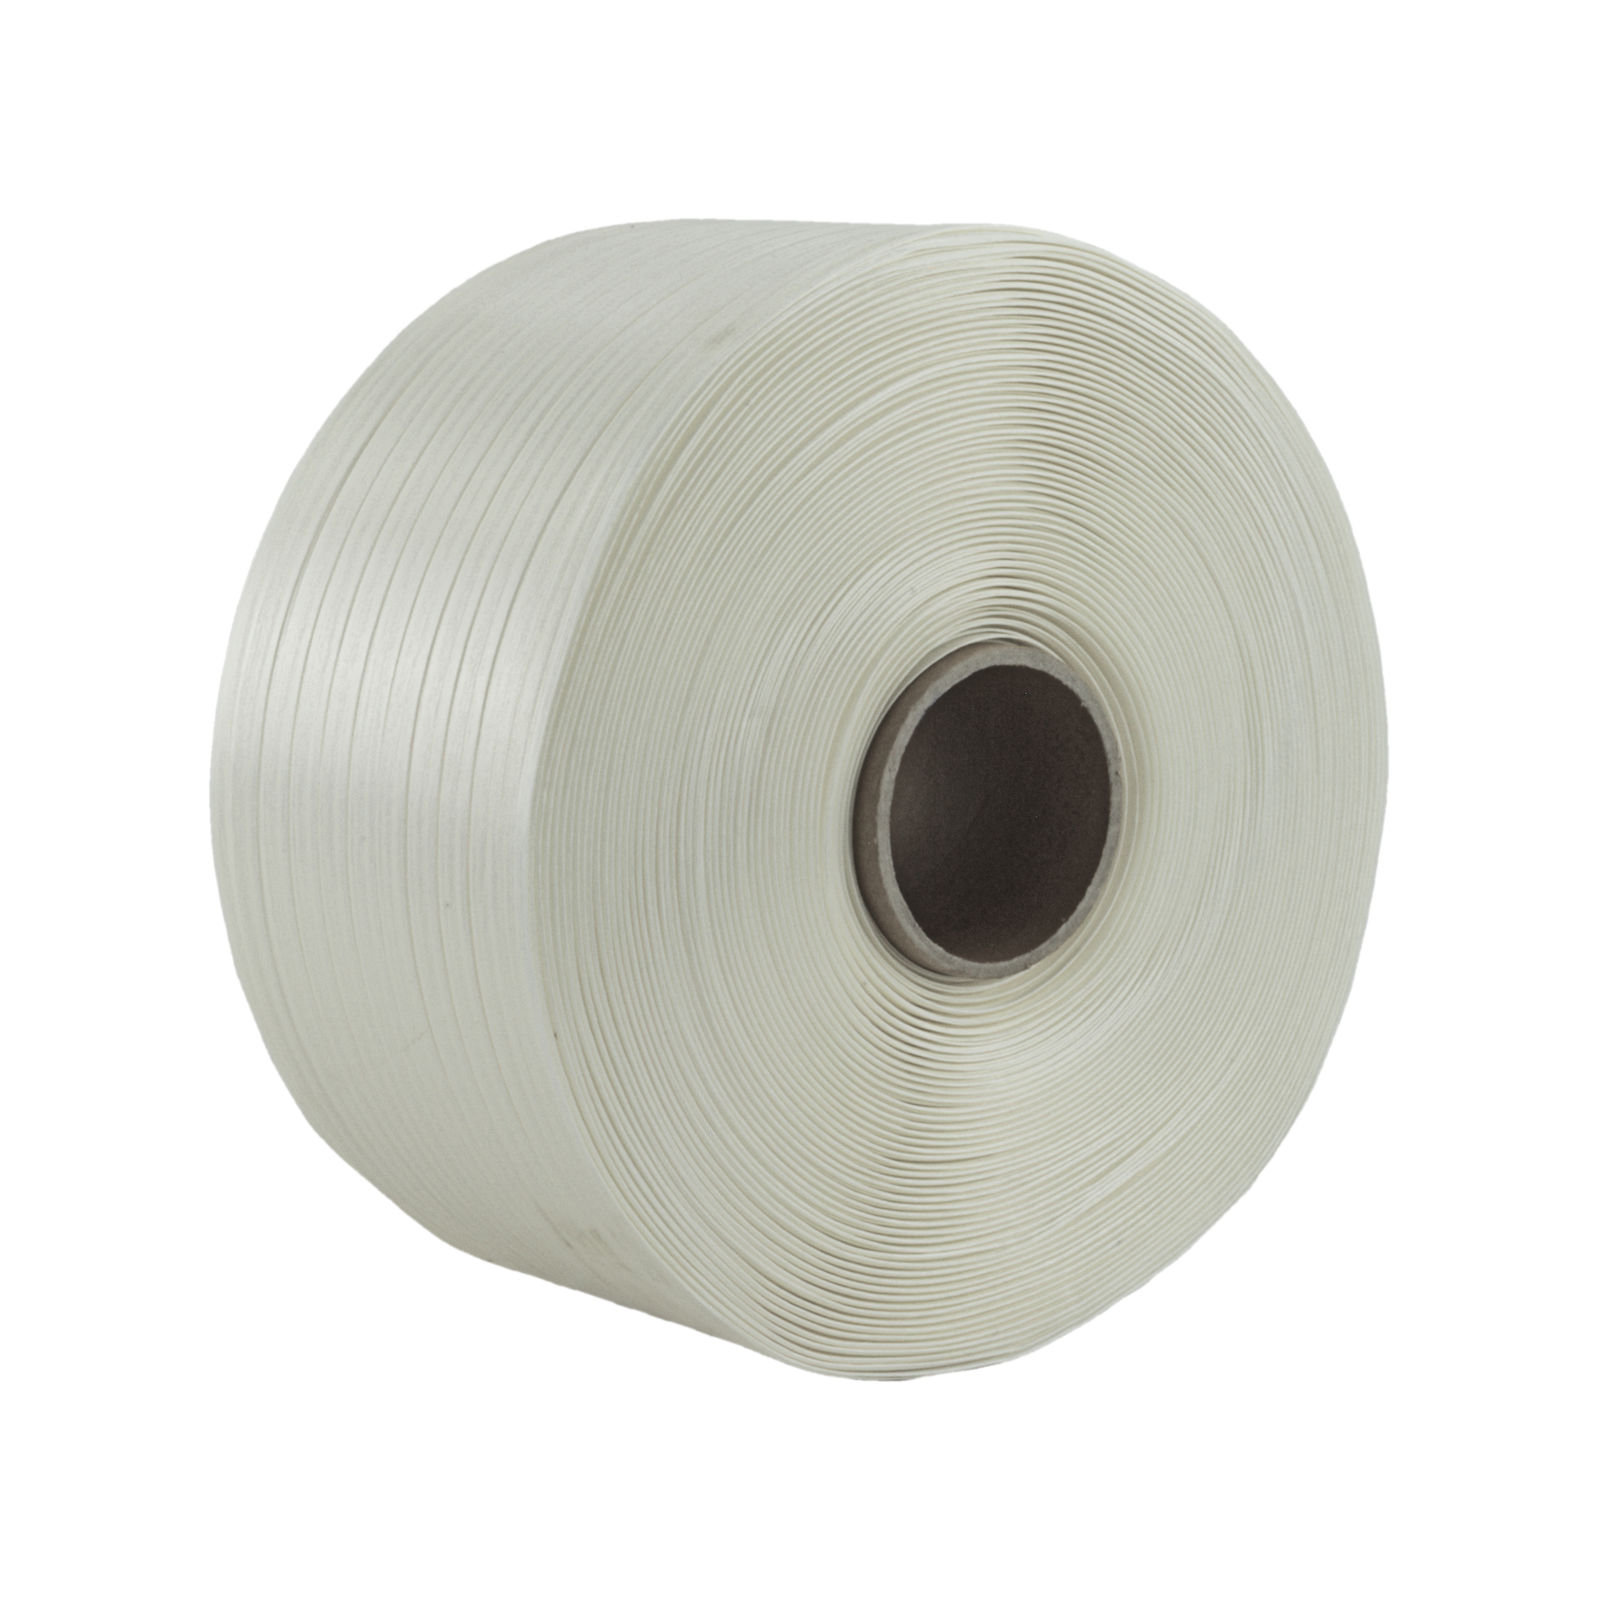 100ST 32-38mm Drahtklammern ✔ Metallschnallen für PES Textilband Textilumreifungsband Kraftband Verpackungsband 